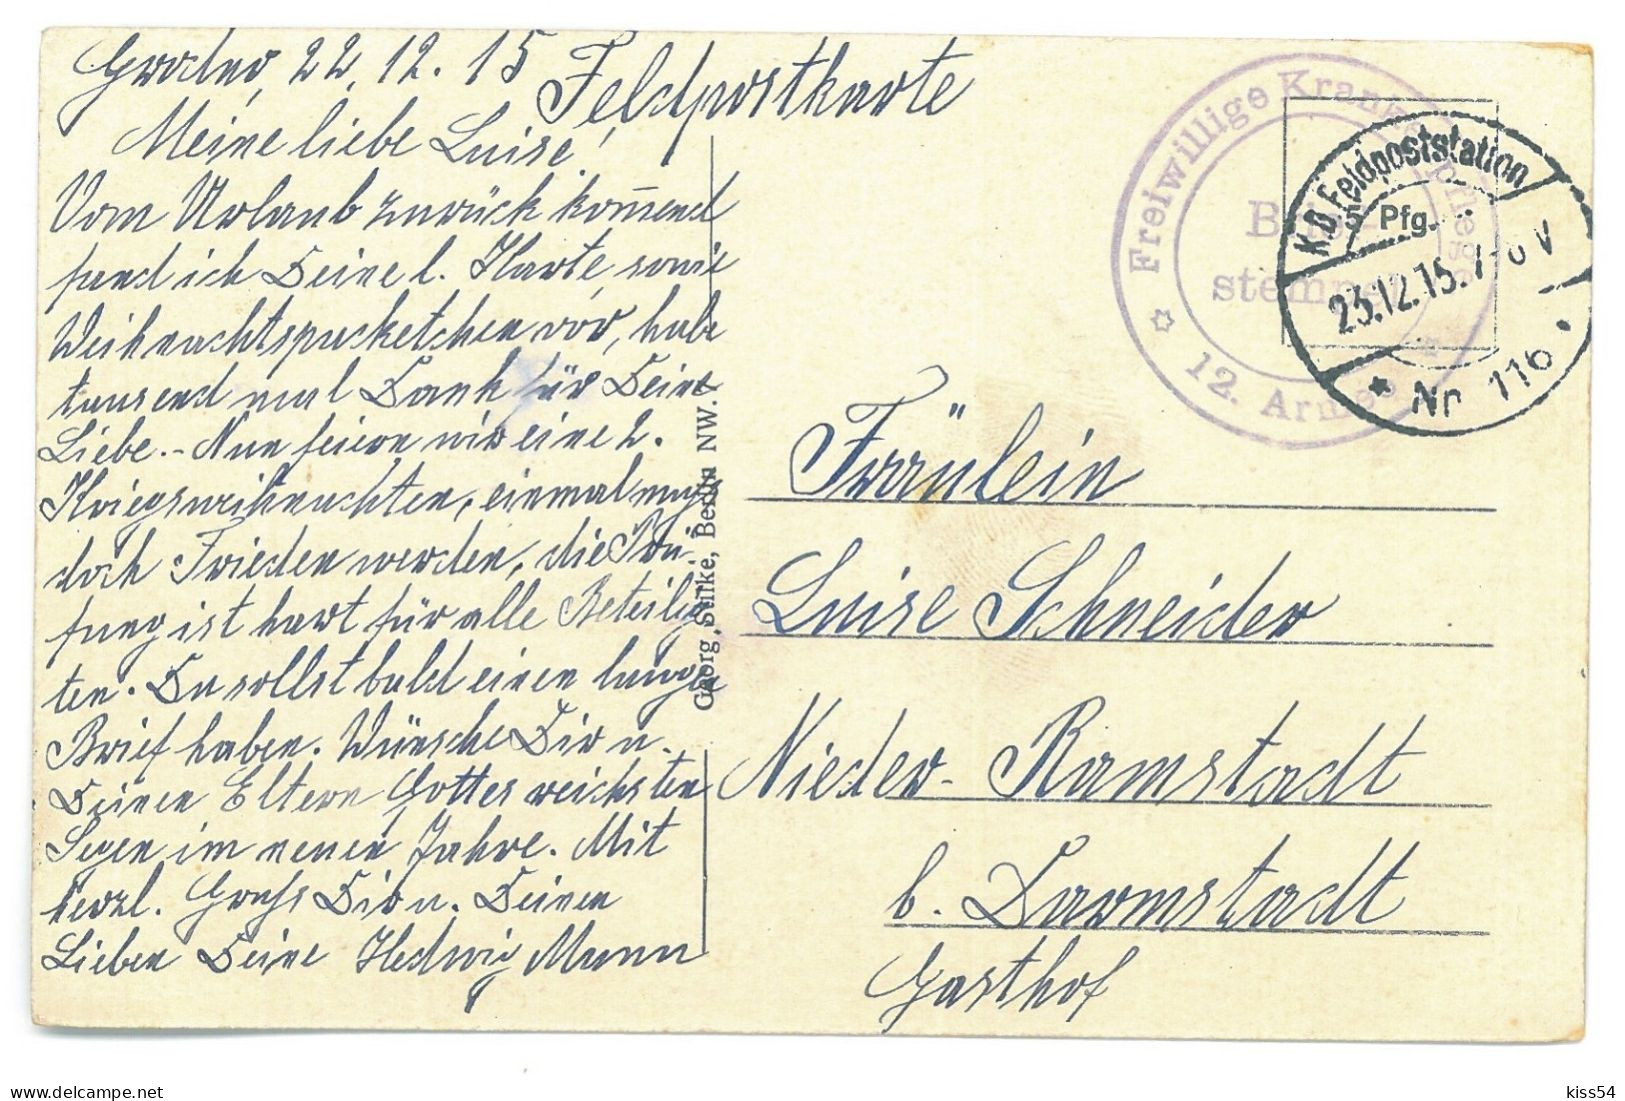 BL 39 - 25388 GRODNO, Cathedral, Belarus - Old Postcard, CENSOR - Used - 1915 - Weißrussland